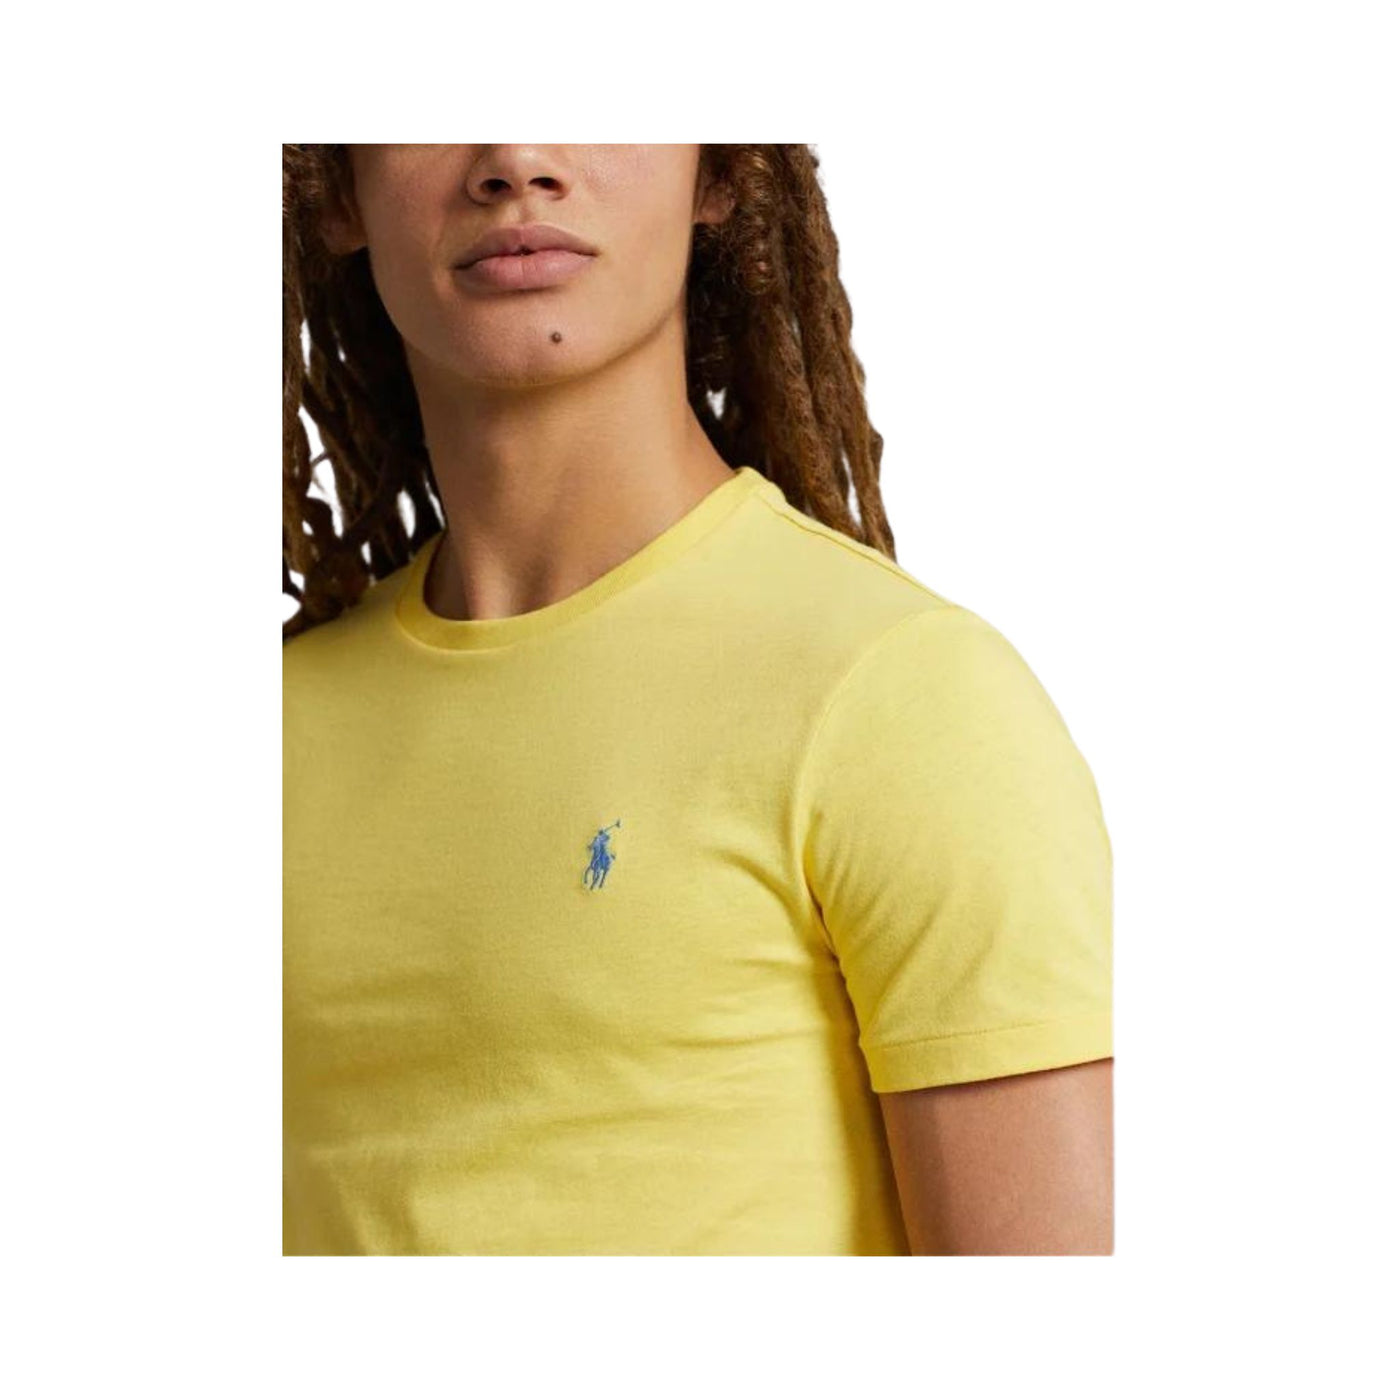 Dettaglio ravvicinato T-shirt in cotone con maniche corte e girocollo e iconico cavallino sul petto